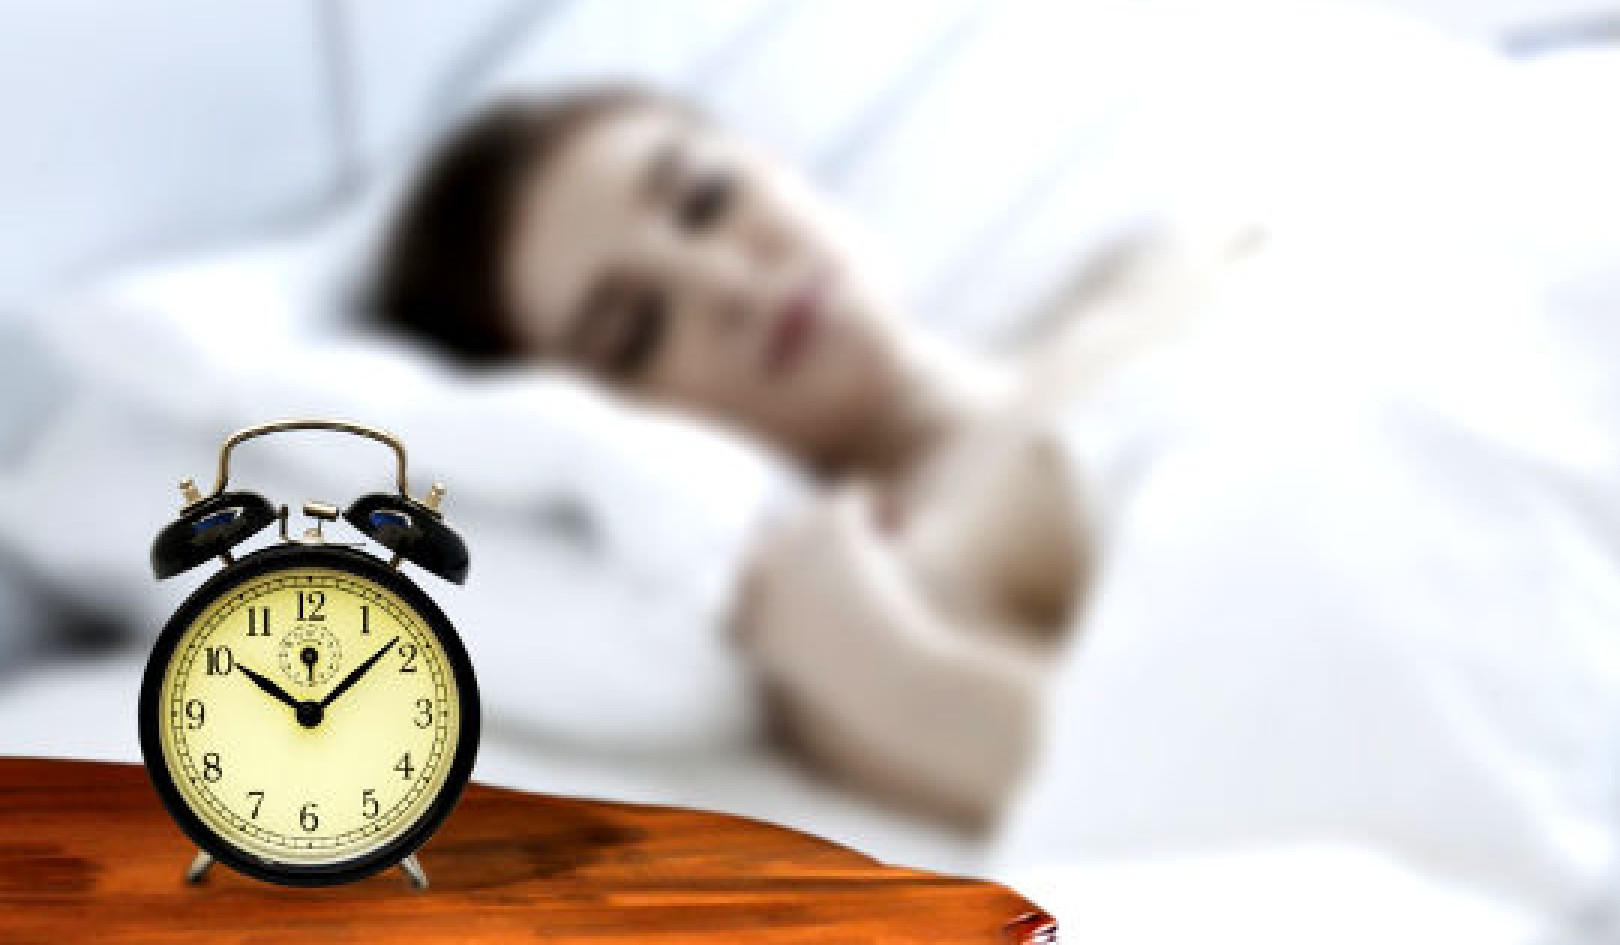 Aika latautua: Unen optimointi auttaa lievittämään kipua